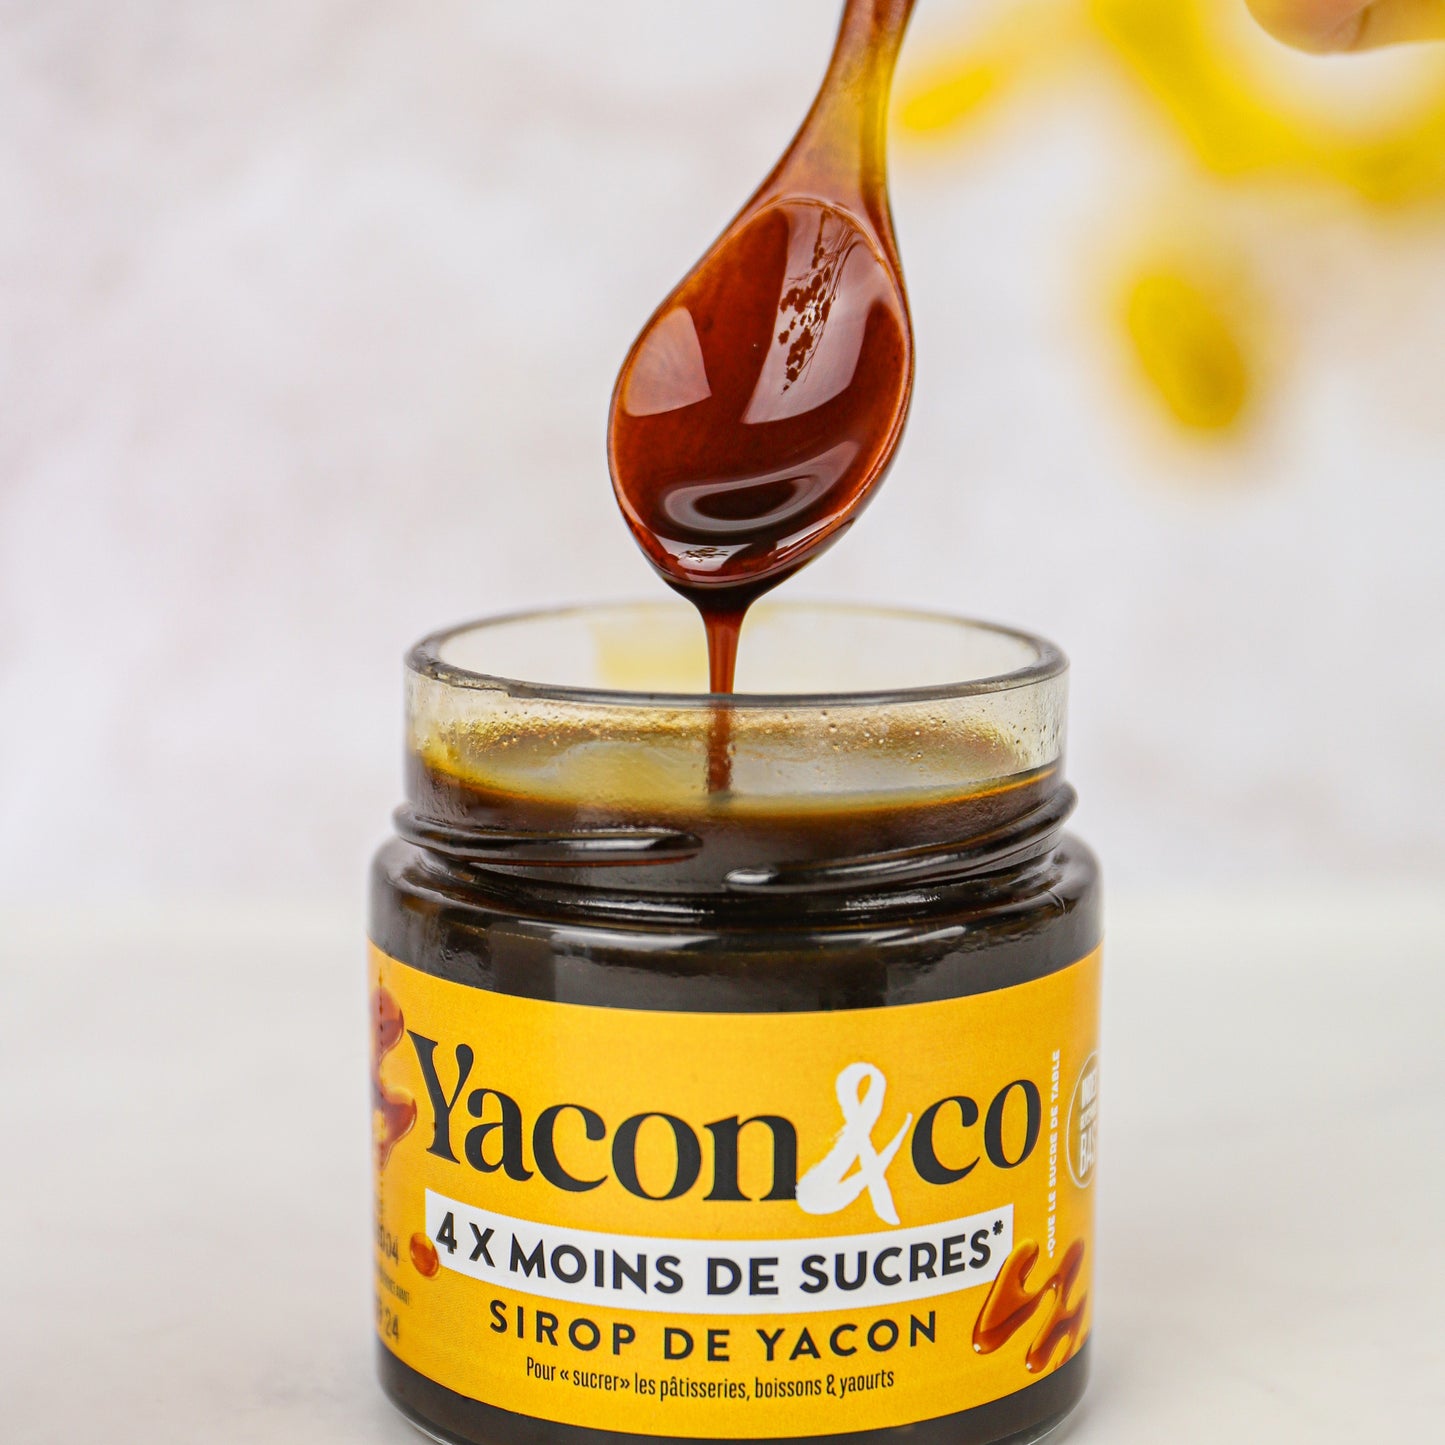 Cuillère en bois d'acacia – Yacon&co